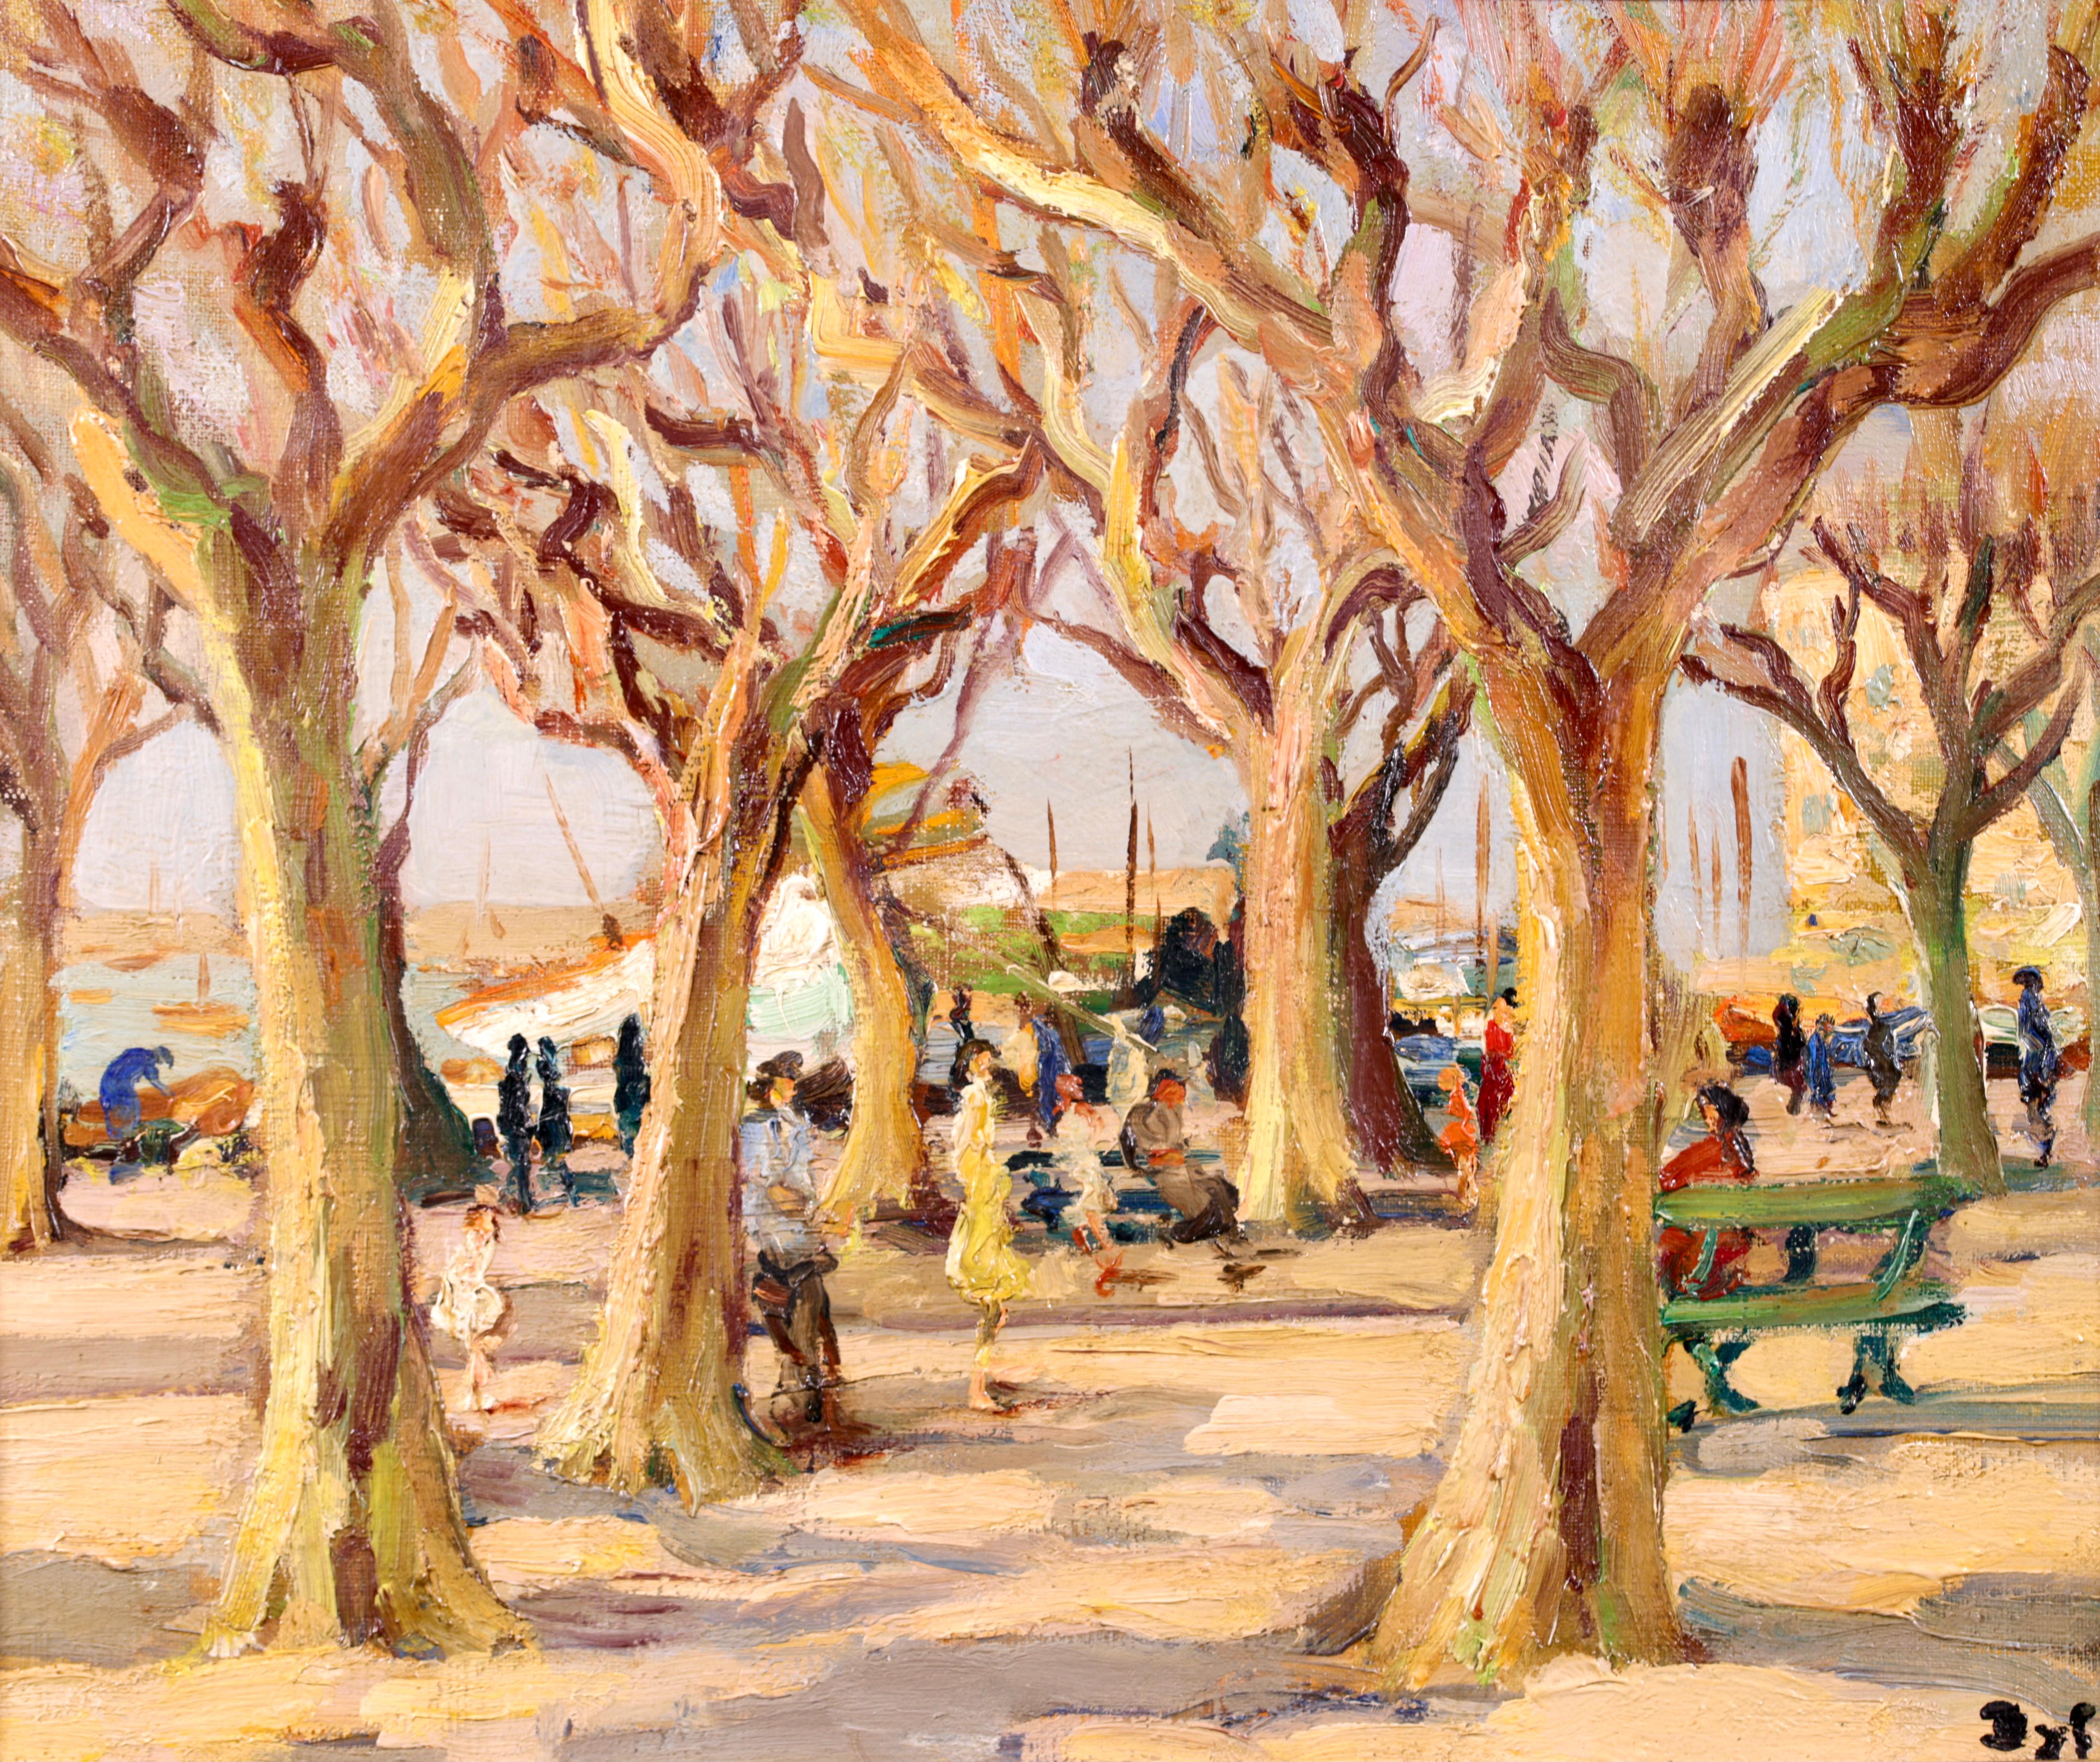 Figures dans un paysage signé, huile sur toile vers 1940 par le très recherché peintre post-impressionniste français Marcel Dyf. L'œuvre représente des personnes profitant d'une journée ensoleillée d'hiver sur le port de Cannes, sur la Côte d'Azur,